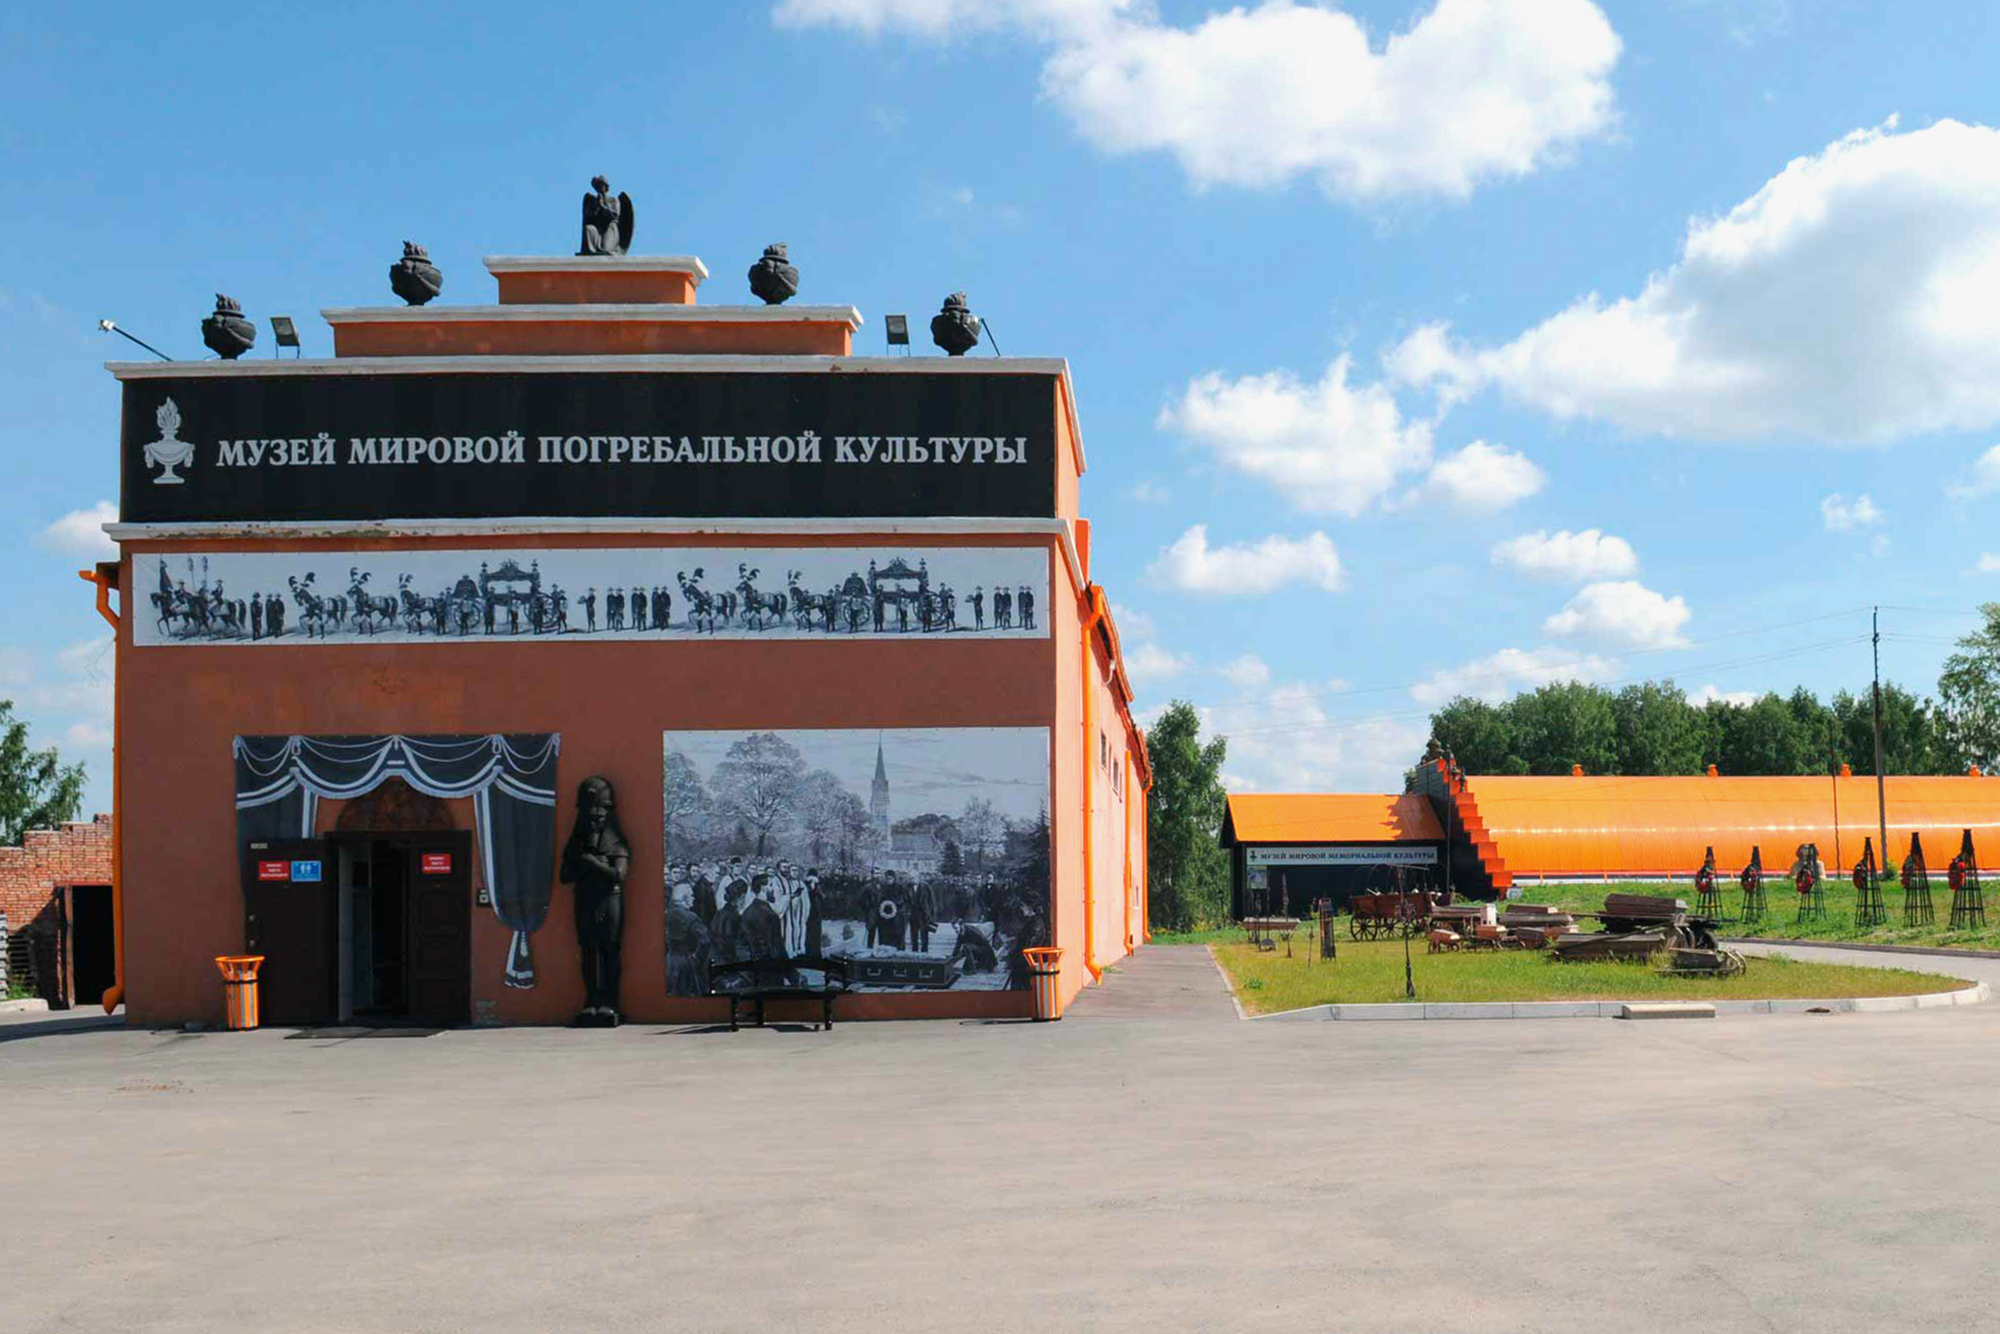 Крематорий в Новосибирске частный, его открыли в 2003 году. Рядом есть парк с аллеями, беседками и скульптурами. Источник: musei‑smerti.ru